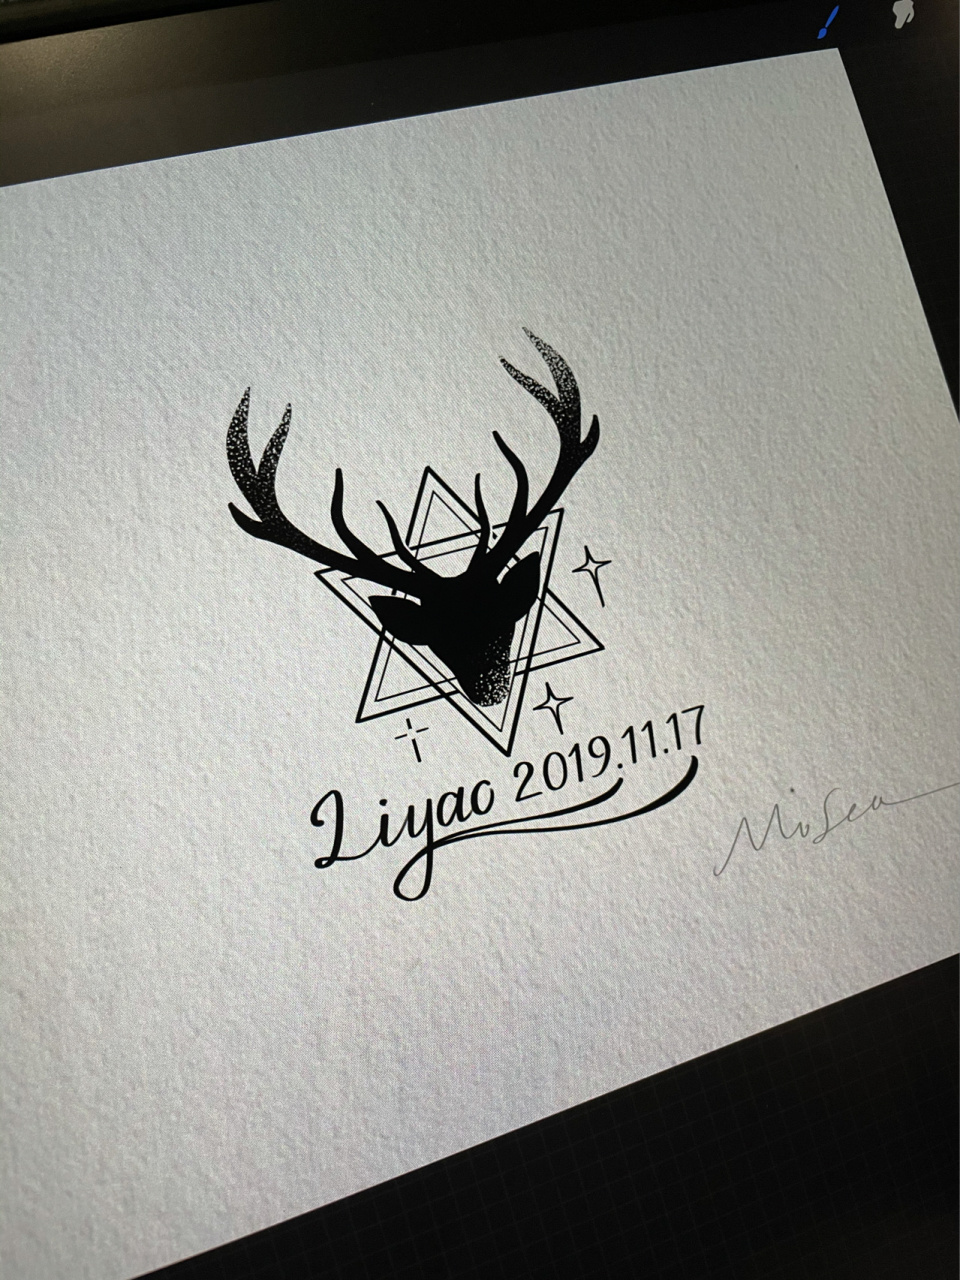 纹身手稿图案大全鹿头图片